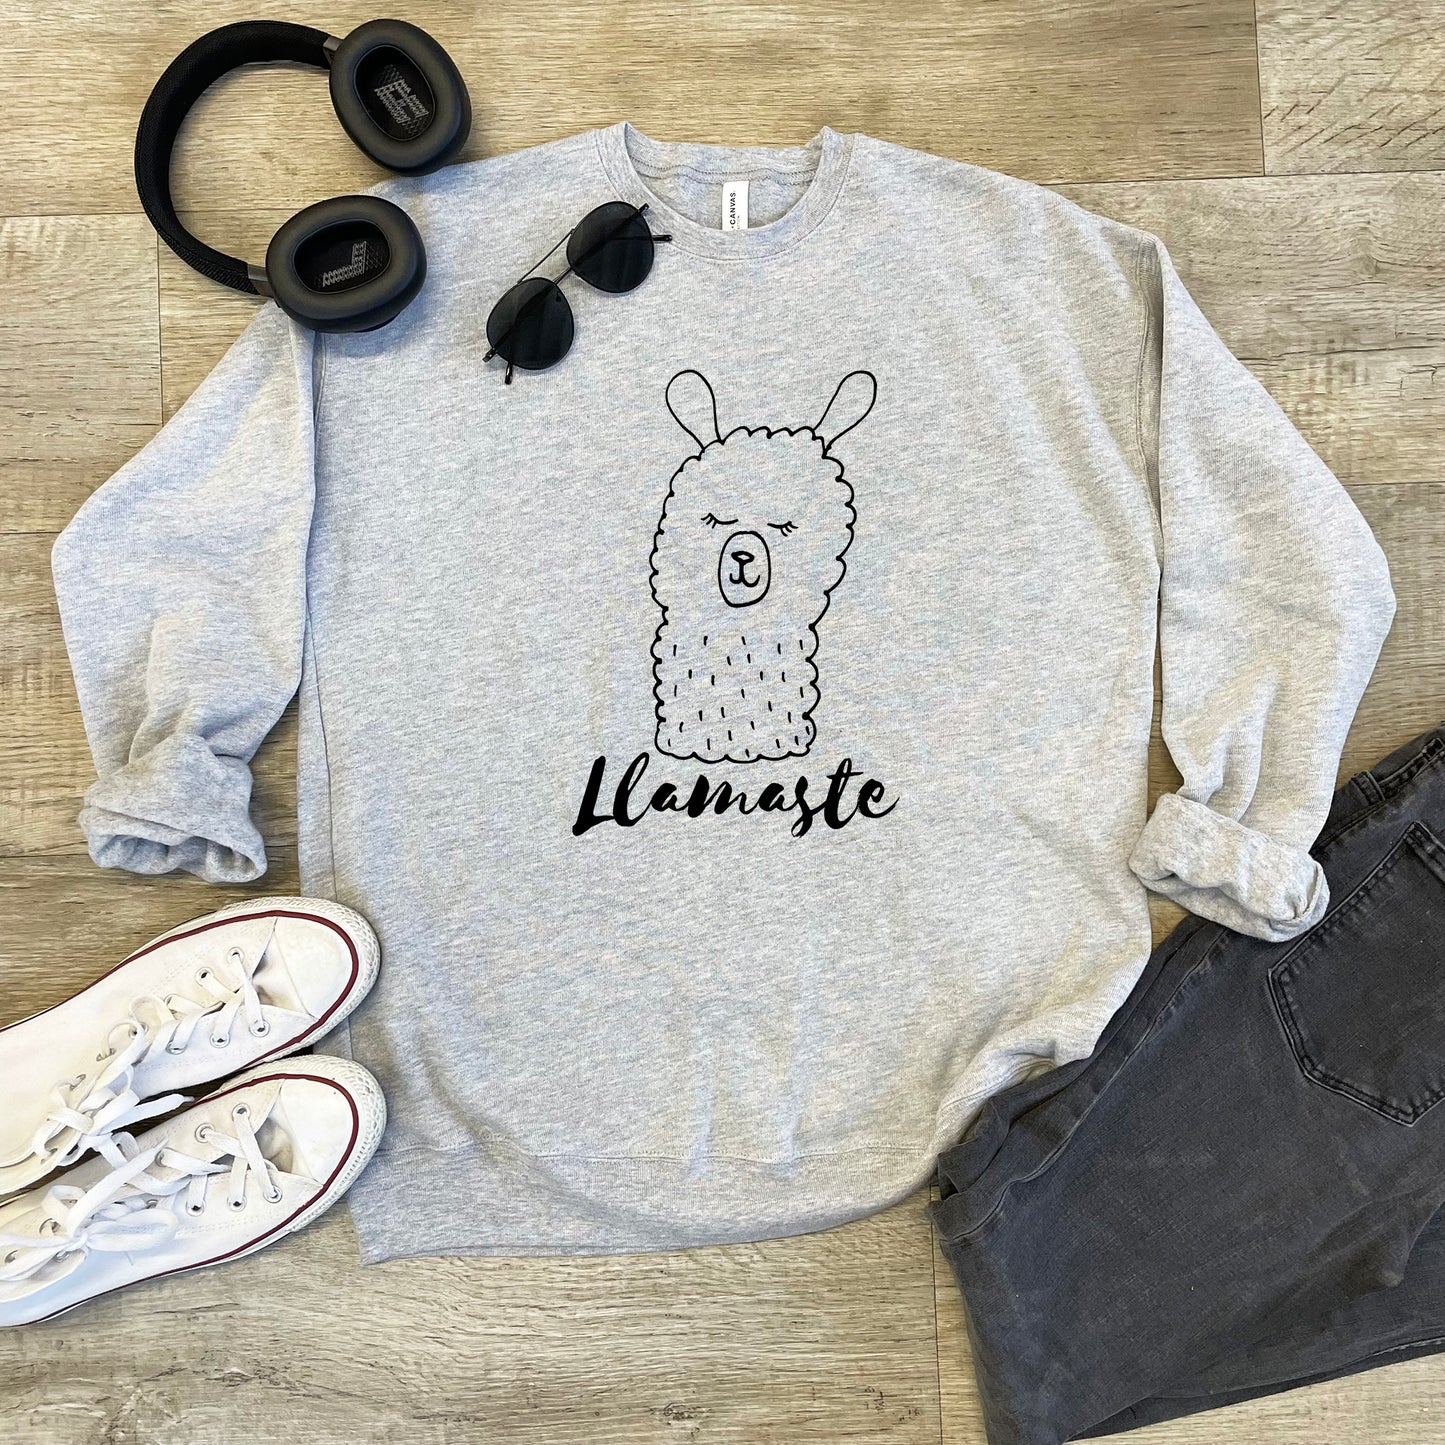 Llamaste (Llama/ Yoga) - Unisex Sweatshirt - Heather Gray or Dusty Blue